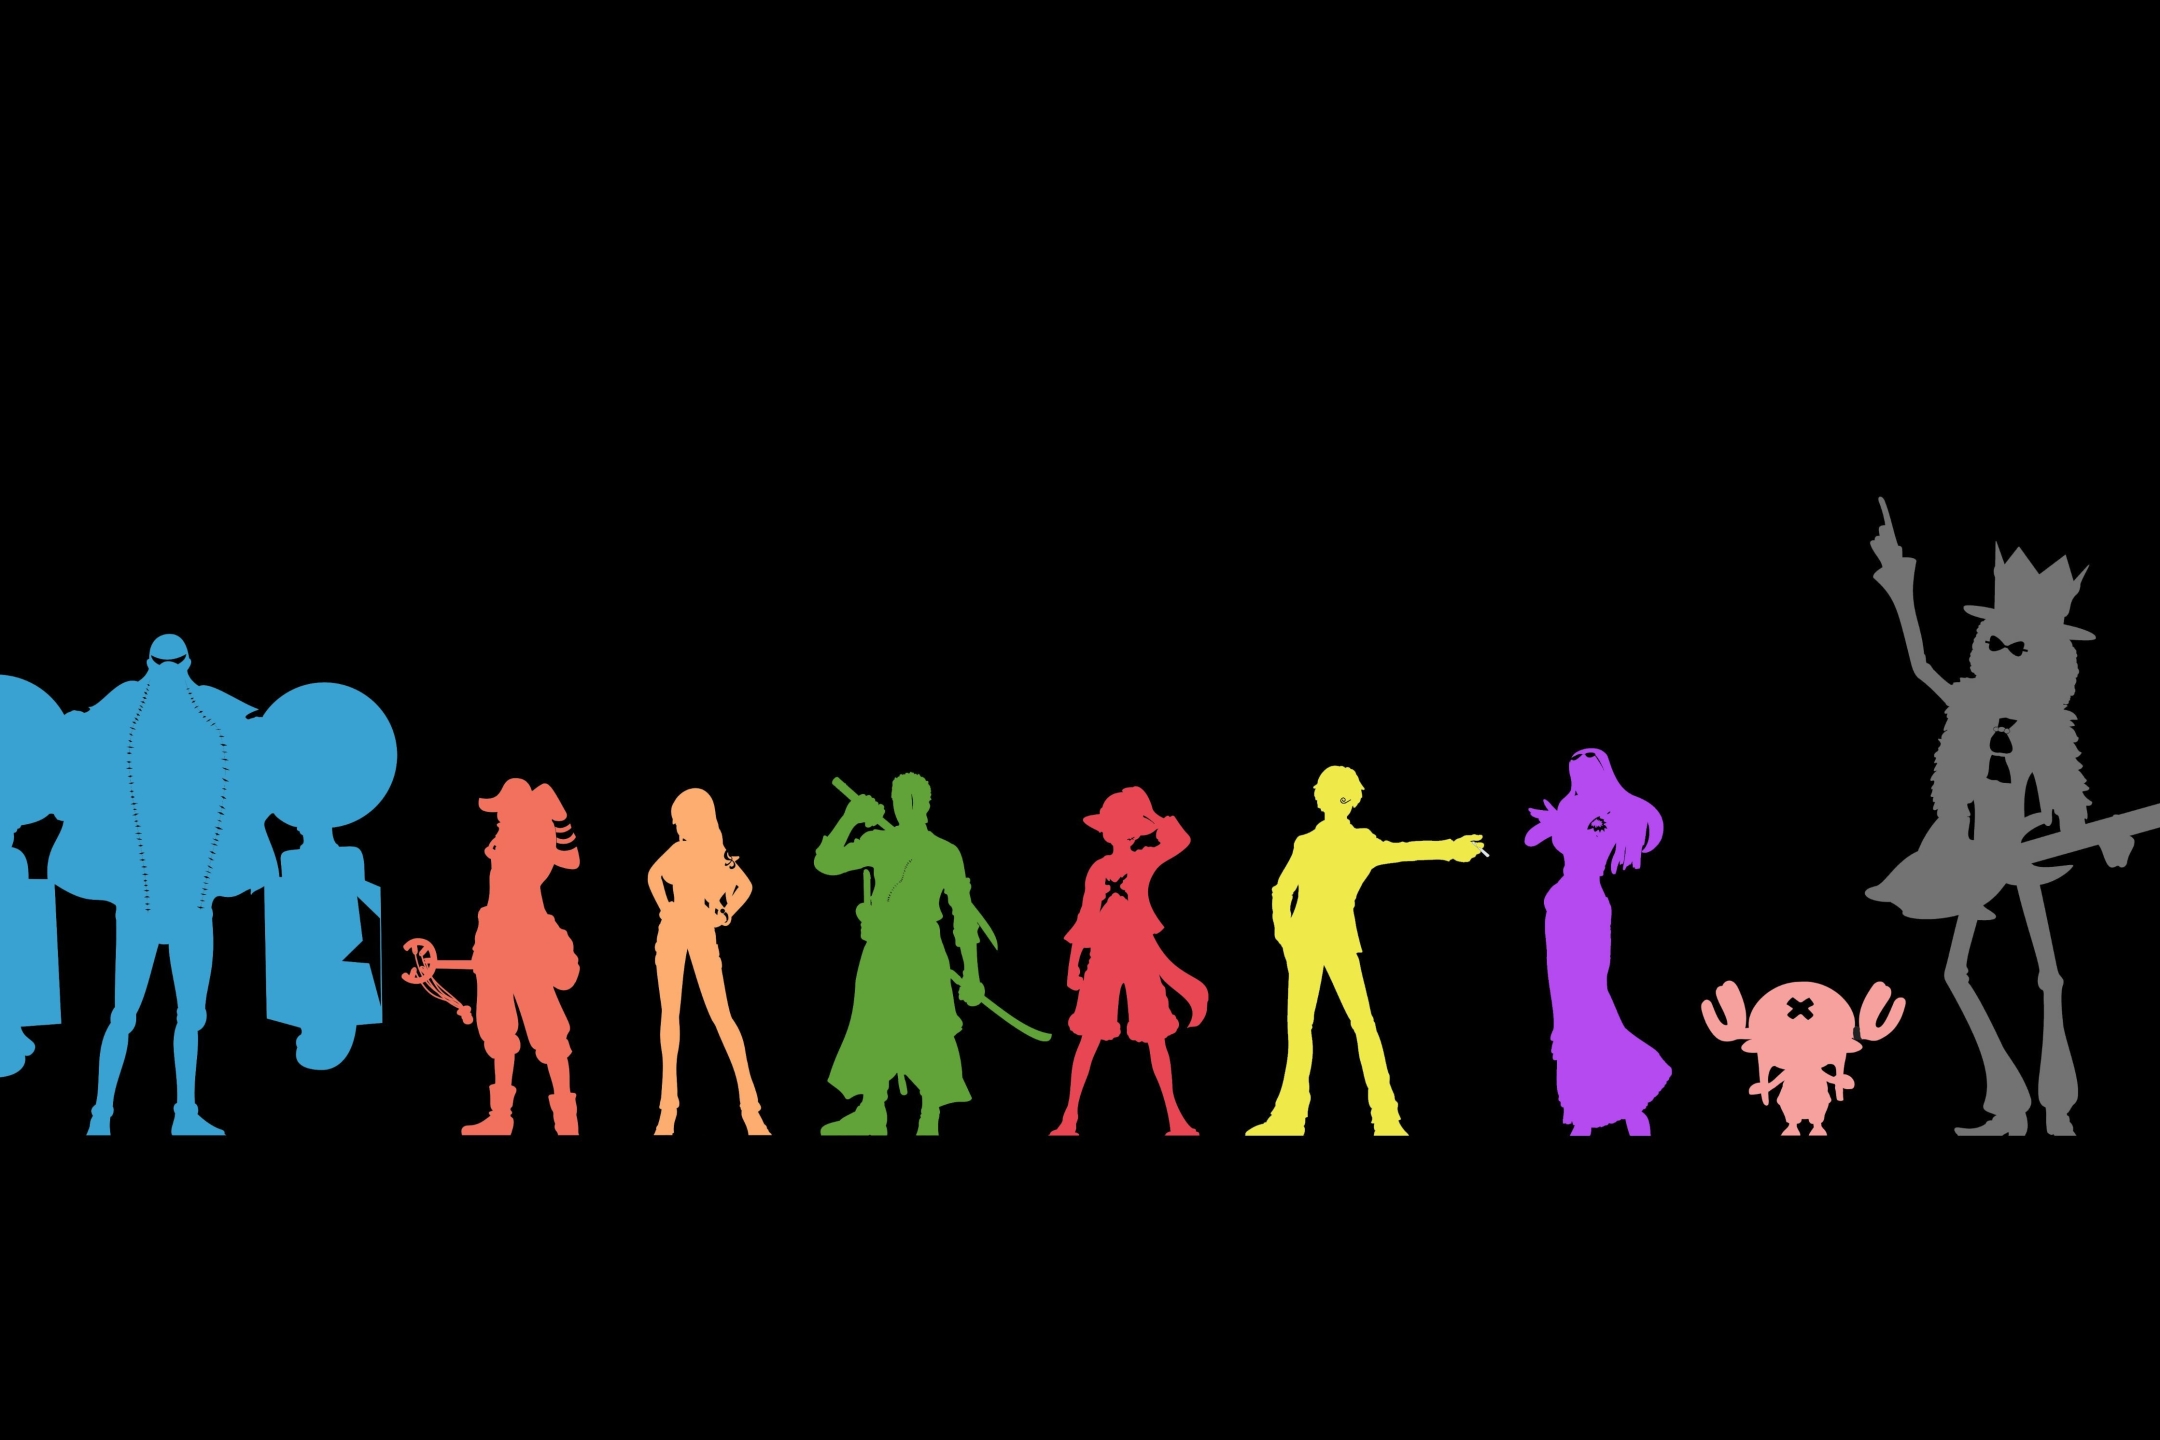 Baixe gratuitamente a imagem Anime, Arma, Guitarra, Violão, Oculos Escuros, Espada, Minimalista, Katana, One Piece, Tony Tony Chopper, Usopp (One Piece), Roronoa Zoro, Monkey D Luffy, Nami (One Piece), Sanji (One Piece), Brook (One Piece), Nico Robin, Franky (One Piece) na área de trabalho do seu PC